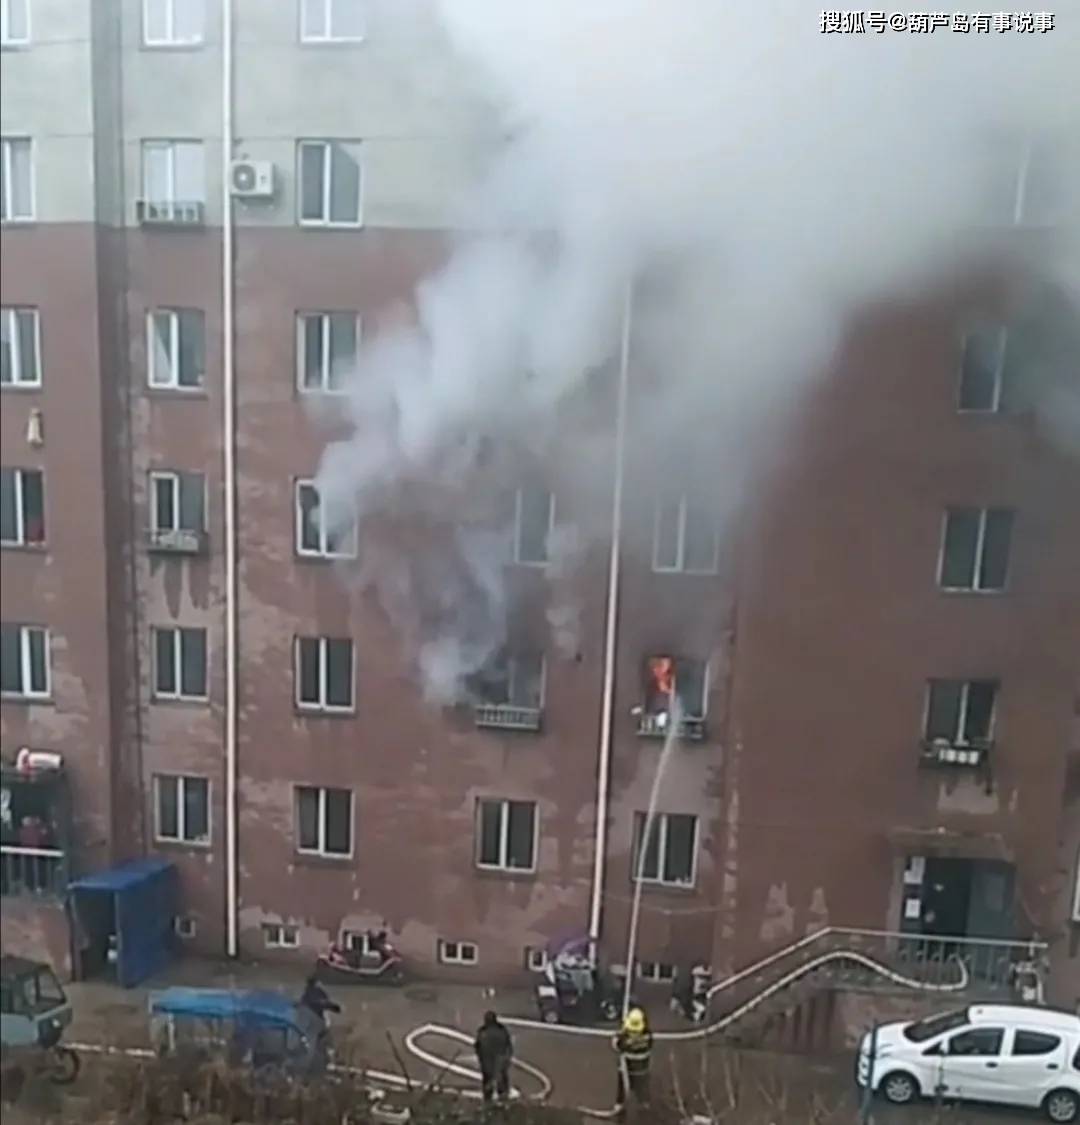 葫芦岛:建昌八家子一居民楼起火,消防员已到达现场救援!